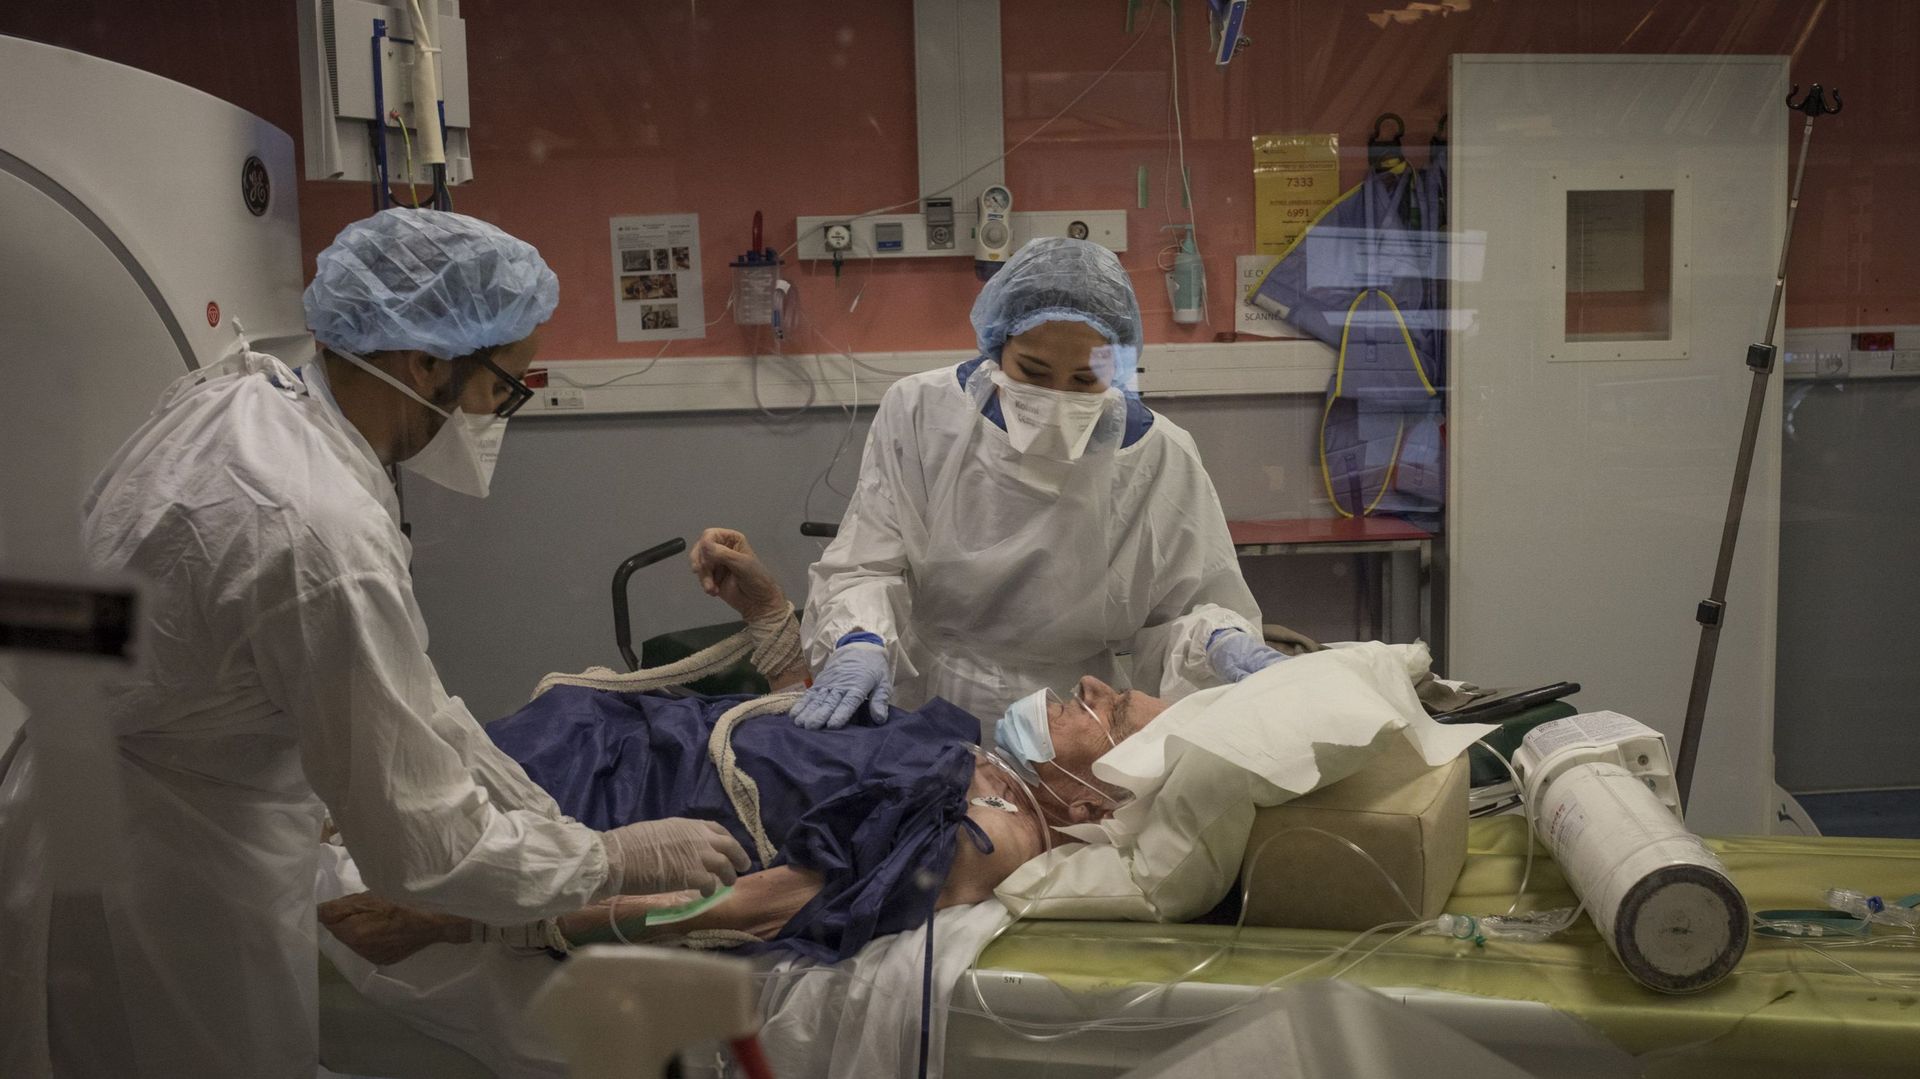 Examen radiologique pour un patient covid dans un hôpital parisien (image d'illustration) 